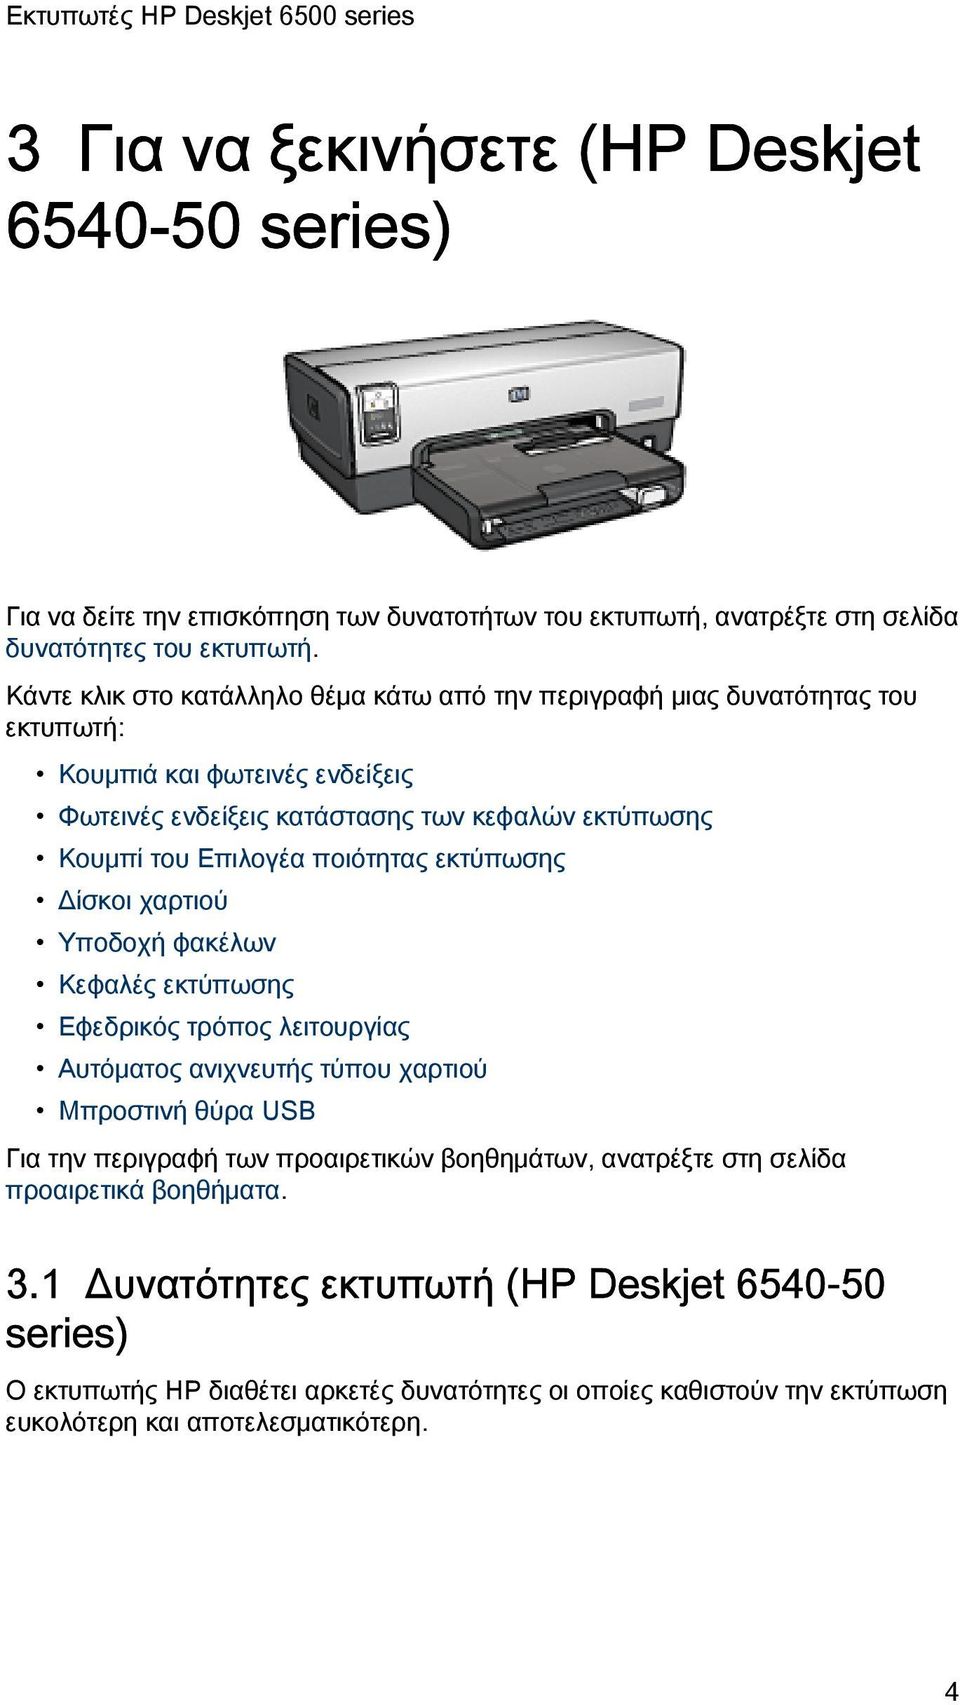 ποιότητας εκτύπωσης Δίσκοι χαρτιού Υποδοχή φακέλων Κεφαλές εκτύπωσης Εφεδρικός τρόπος λειτουργίας Αυτόματος ανιχνευτής τύπου χαρτιού Μπροστινή θύρα USB Για την περιγραφή των προαιρετικών